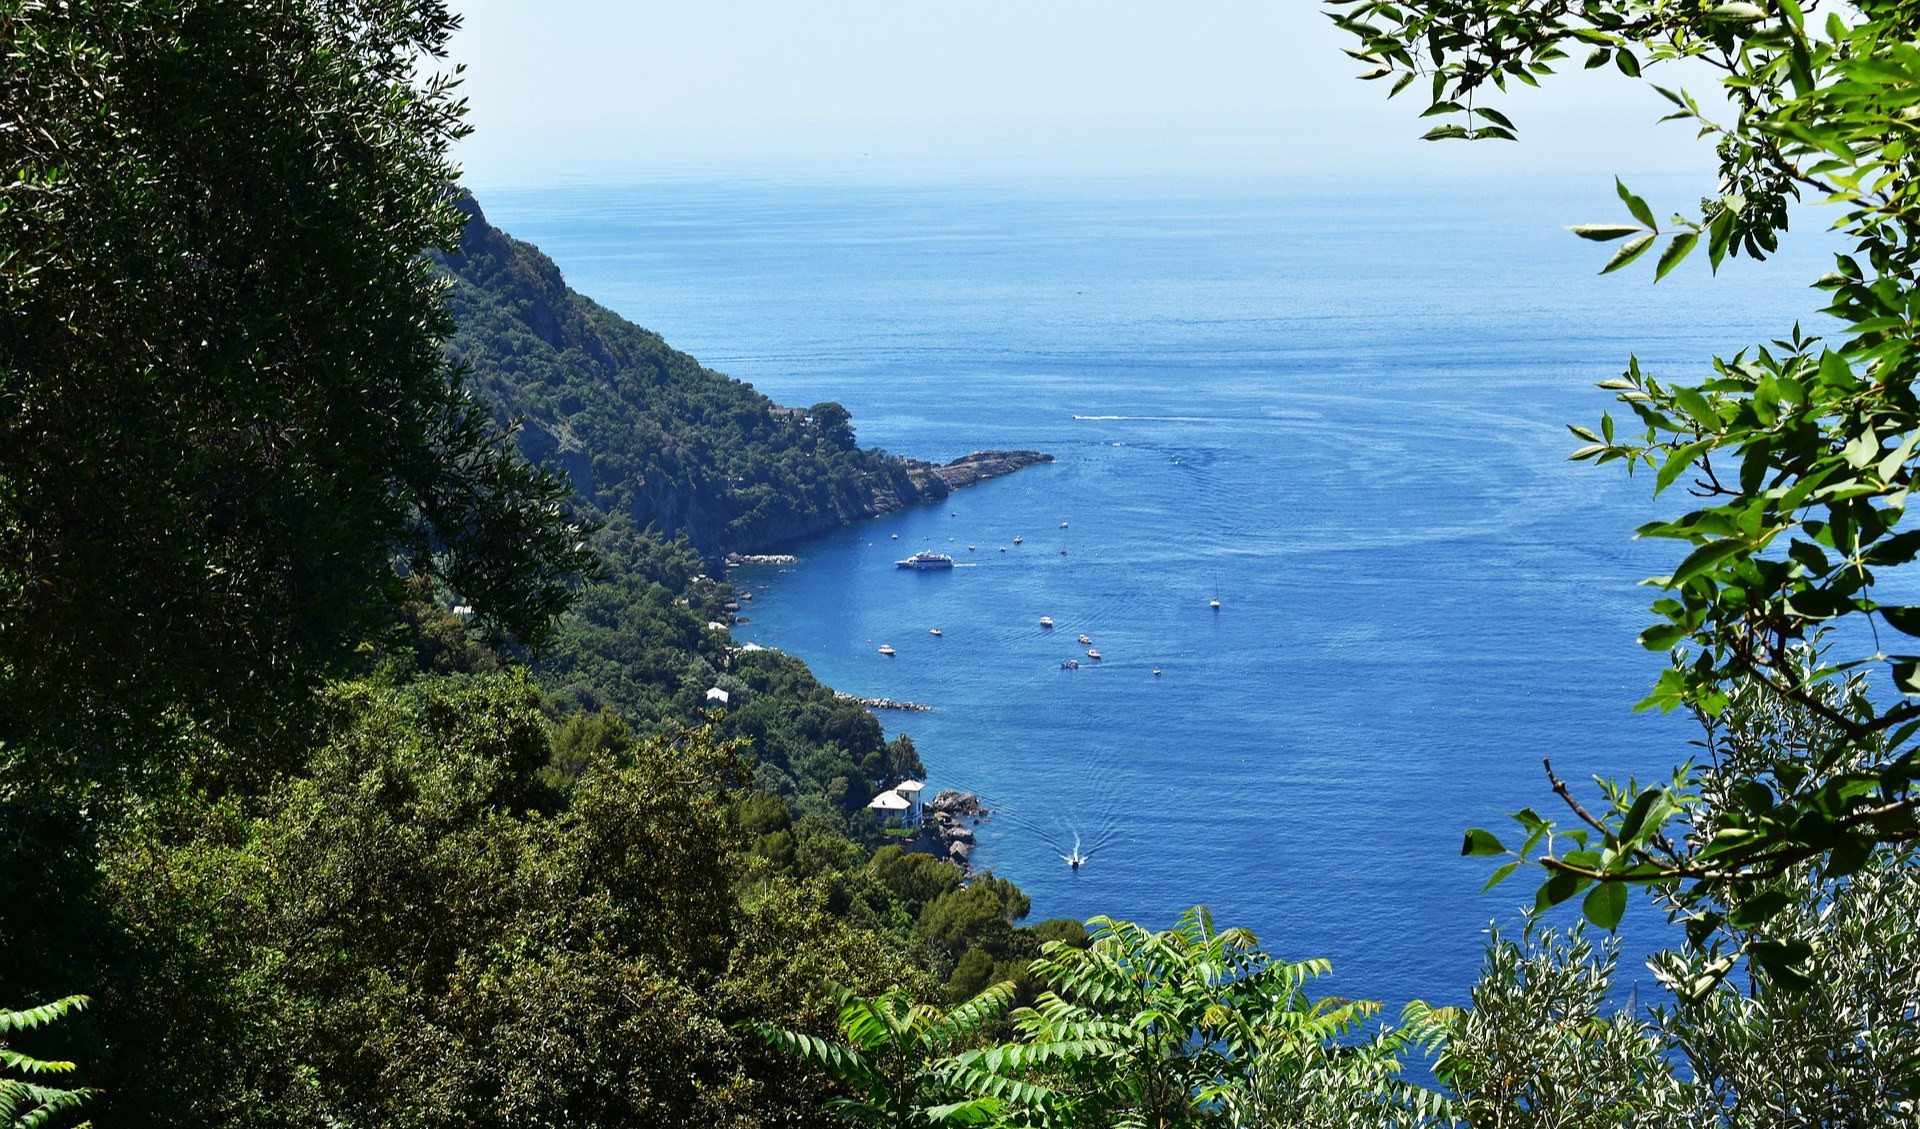 Meteo in Liguria: inizio settimana con sole e temperature in aumento